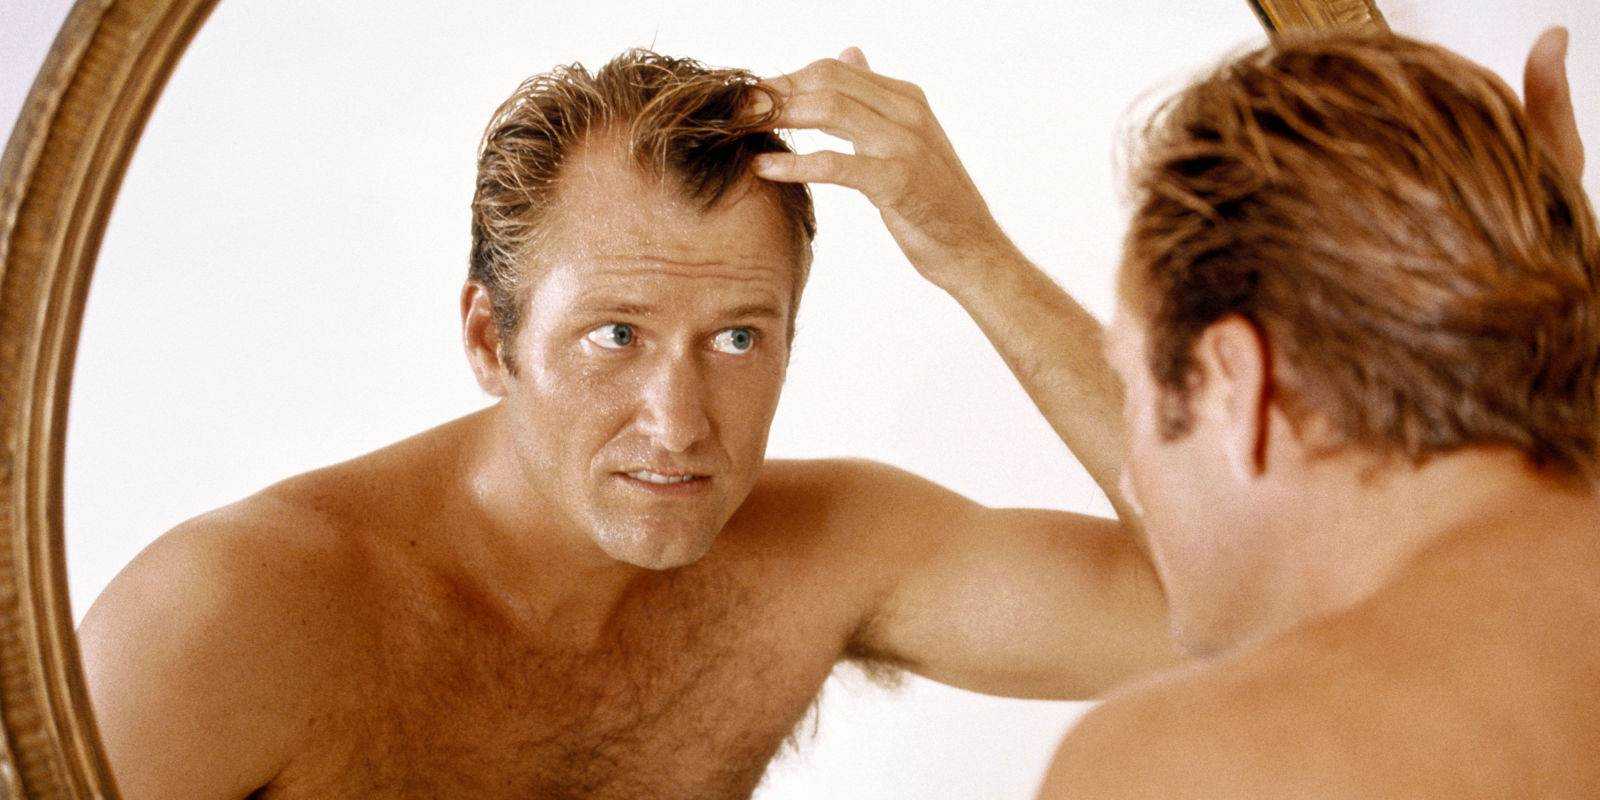 Облысение и тестостерон у мужчин: взаимосвязь дигидротестостерона и выпадения волос, причины, лечение